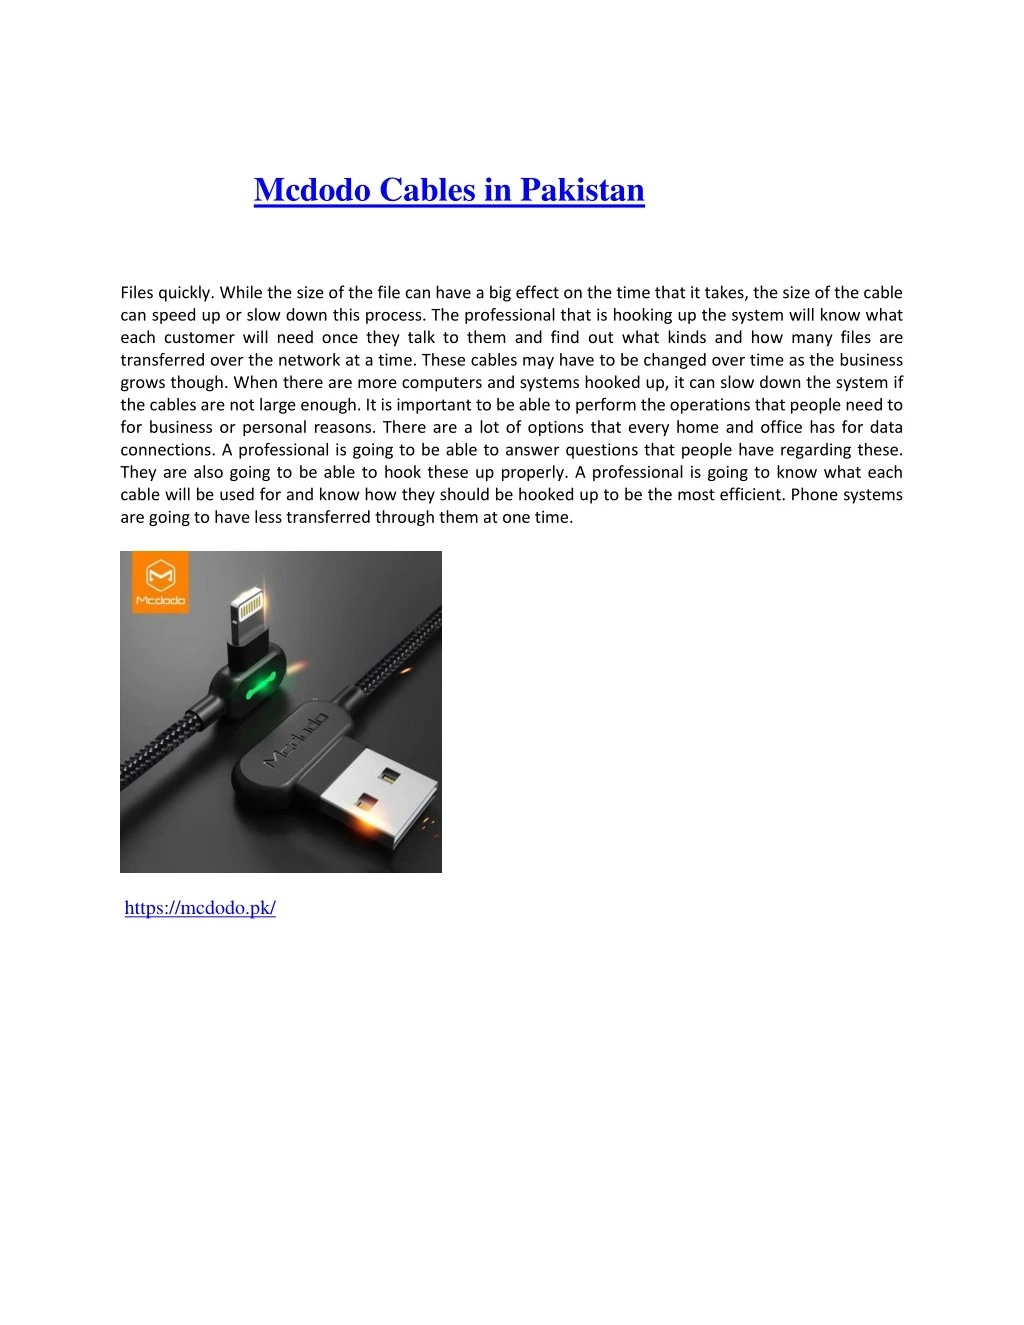 mcdodo cables in pakistan